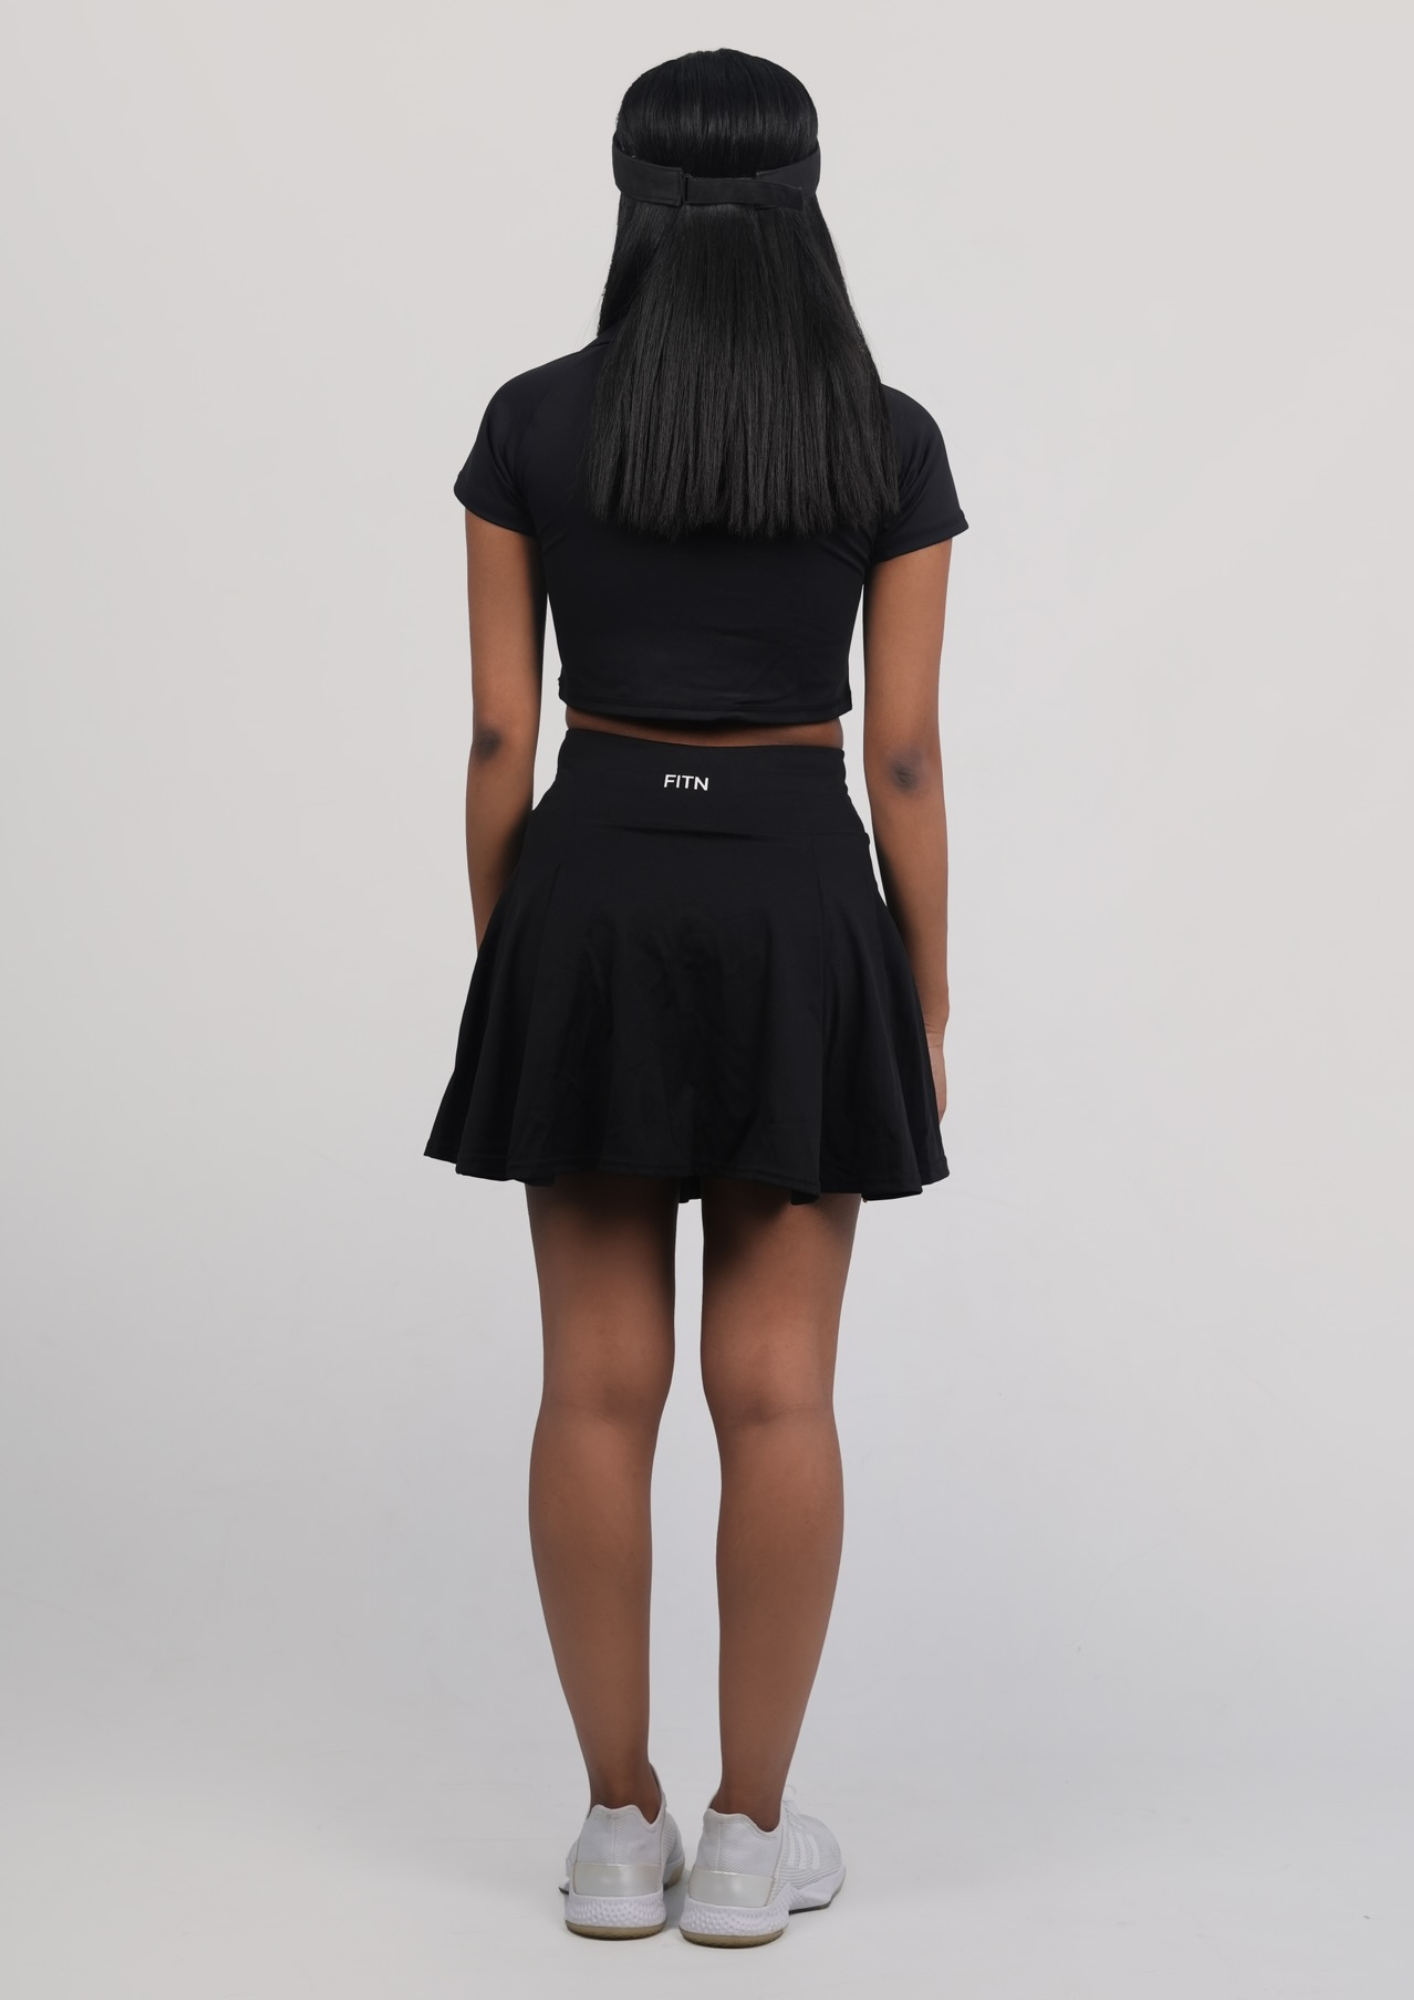 Black Tennis skirt